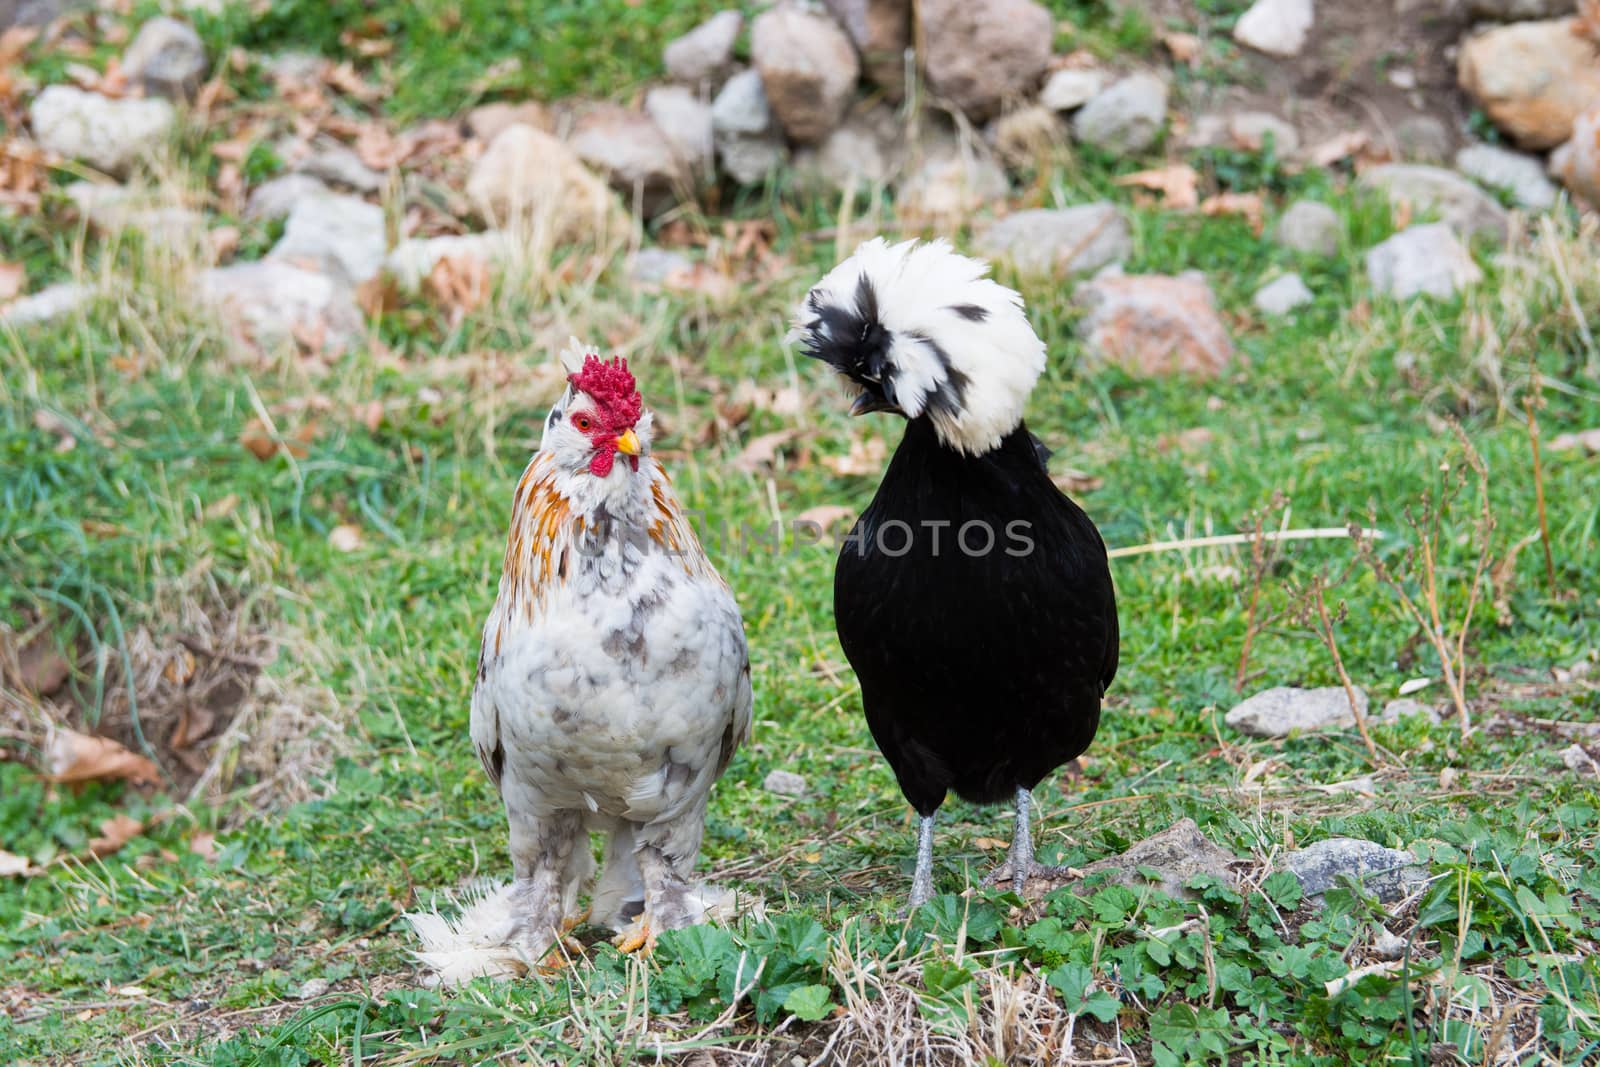 black sultan chiken and Brahma chicken